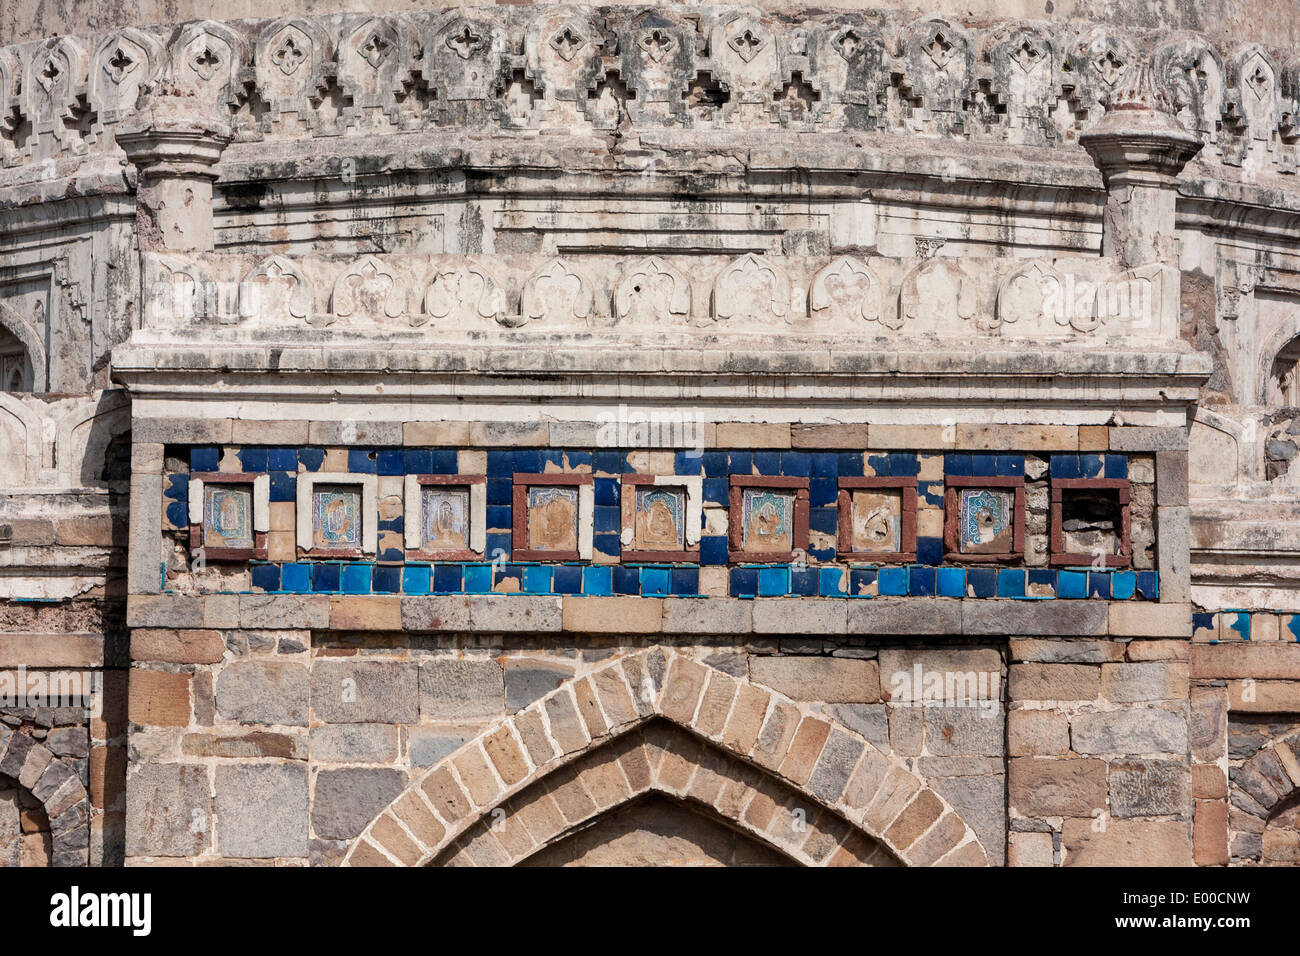 New Delhi, Inde. Lodi Gardens. Sheesh Gumbad ('dôme vitré'), avec des restes de carreaux bleus. Fin 15ème. Siècle. Banque D'Images